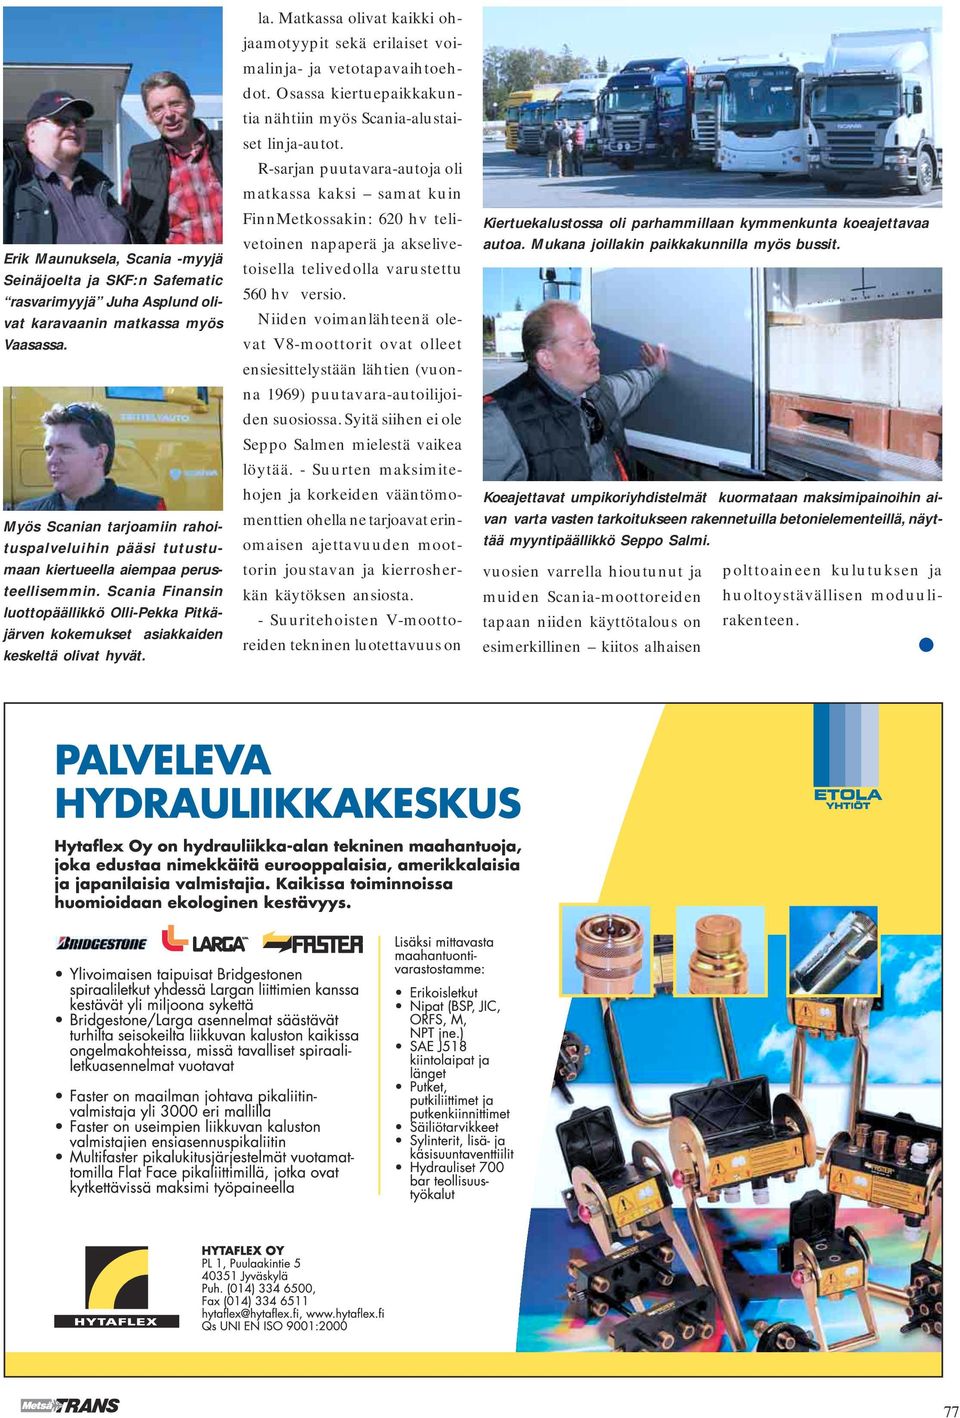 Scania Finansin luottopäällikkö Olli-Pekka Pitkäjärven kokemukset asiakkaiden keskeltä olivat hyvät. la. Matkassa olivat kaikki ohjaamotyypit sekä erilaiset voimalinja- ja vetotapavaihtoehdot.